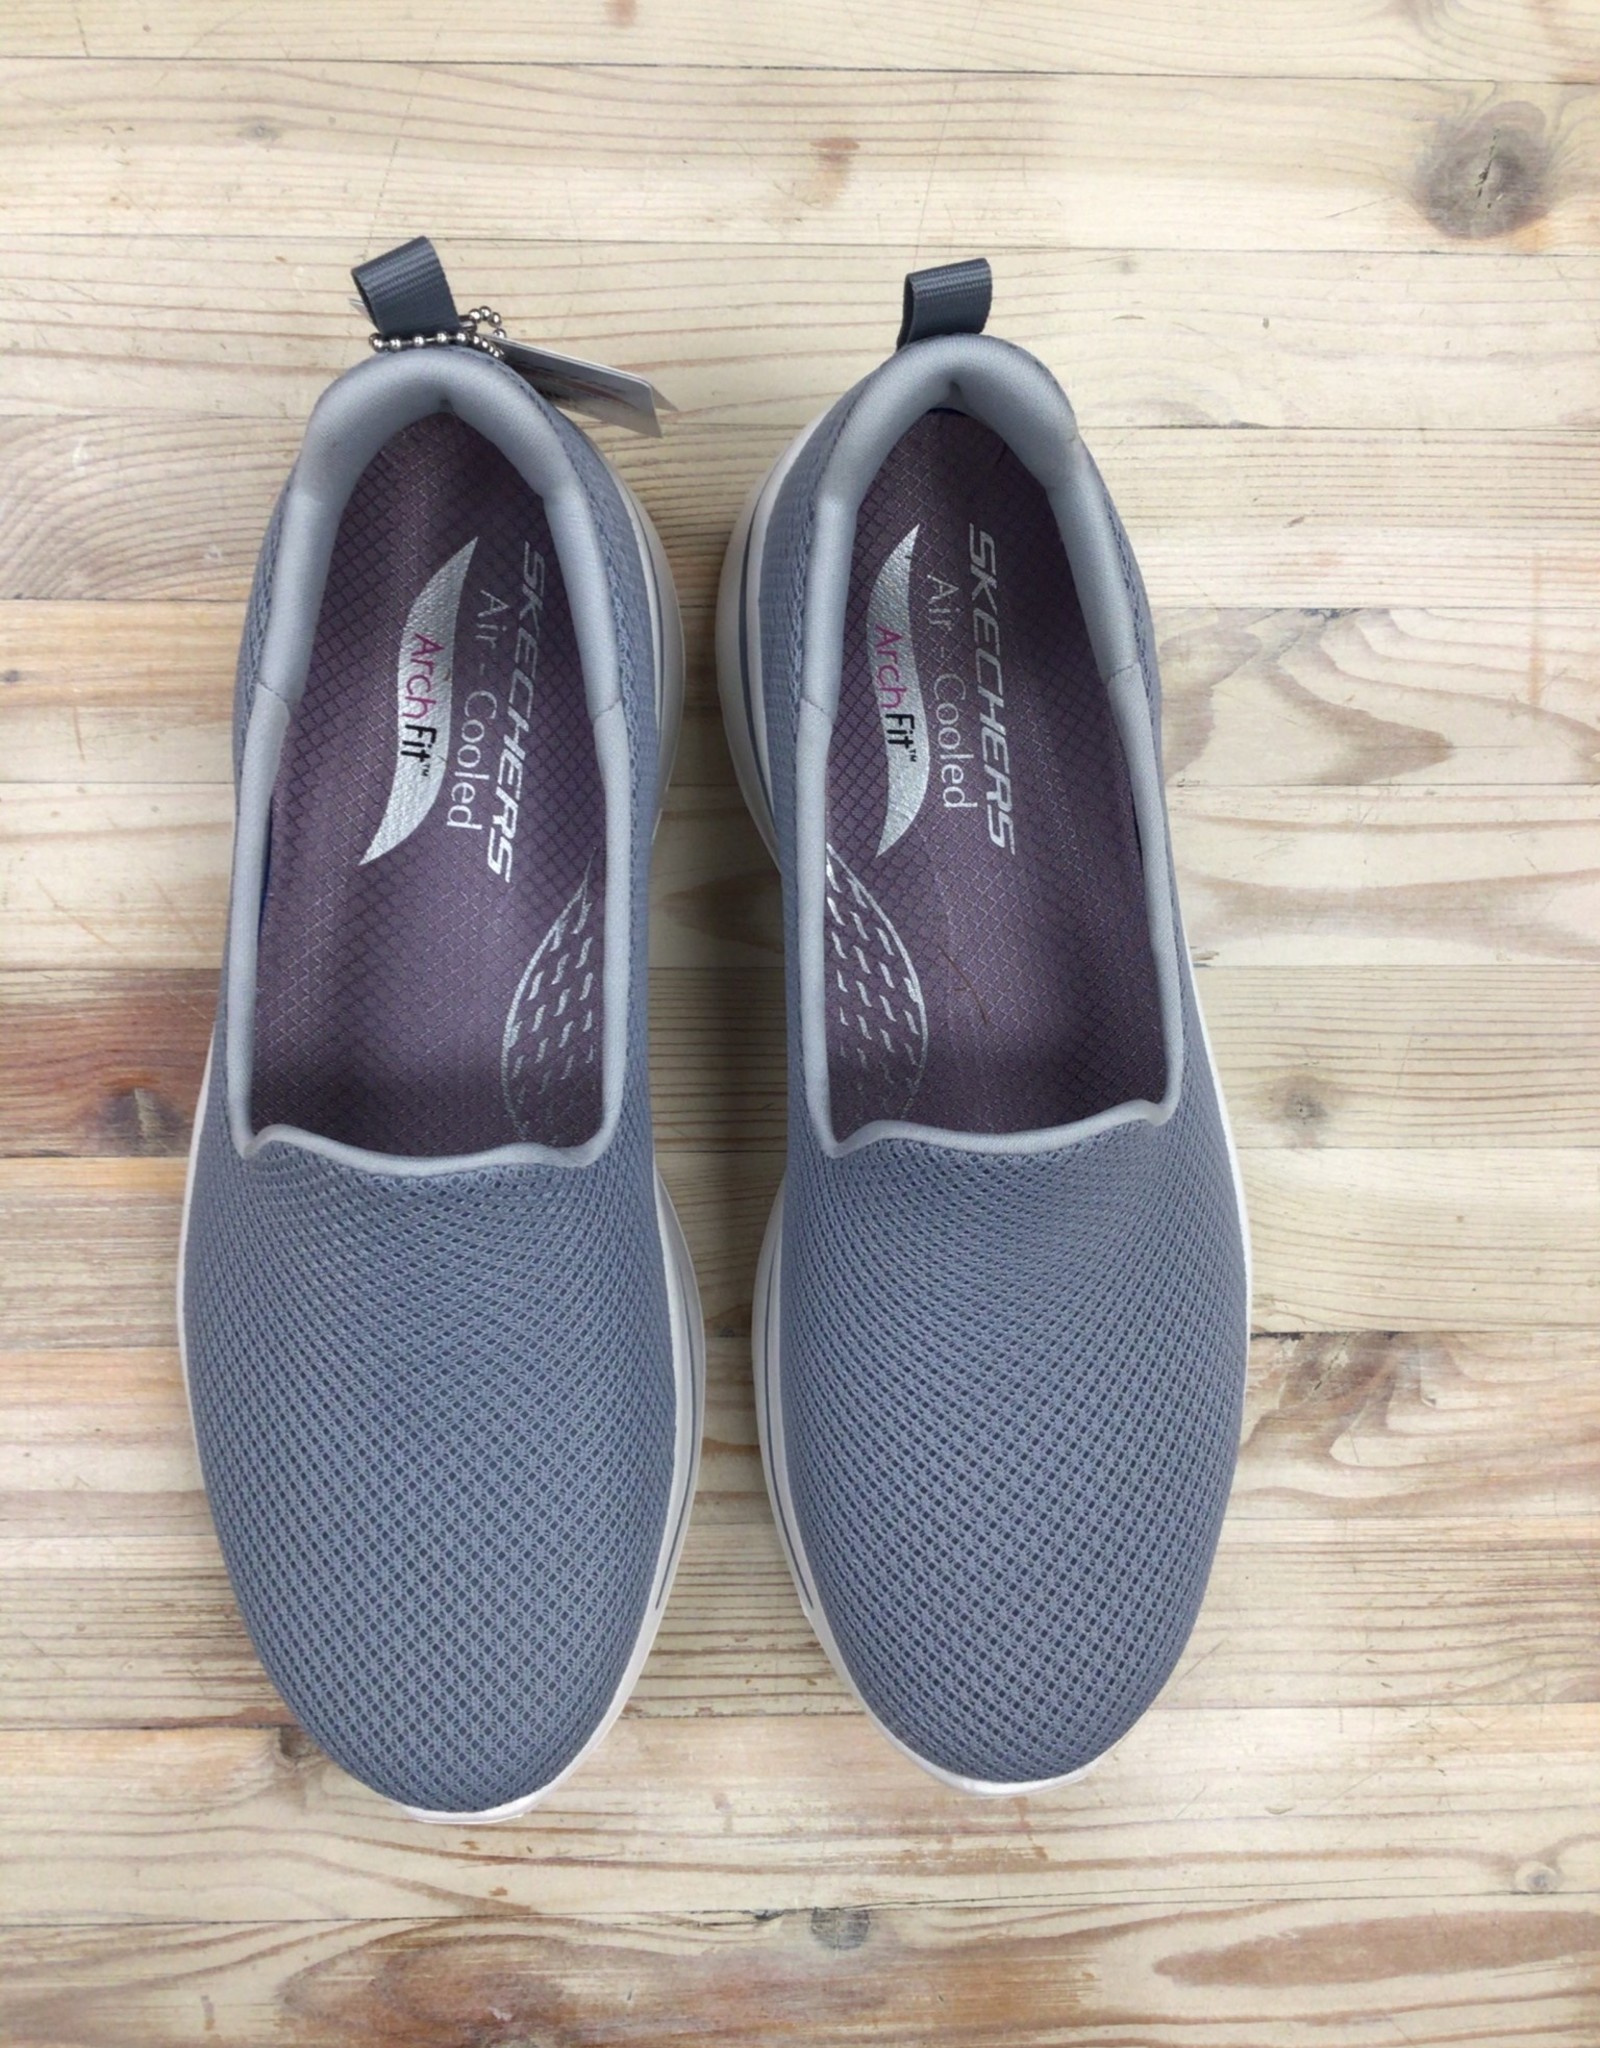 Skechers Go Walk Arch Fit - Grateful Ladies’ - Shoes & M'Orr